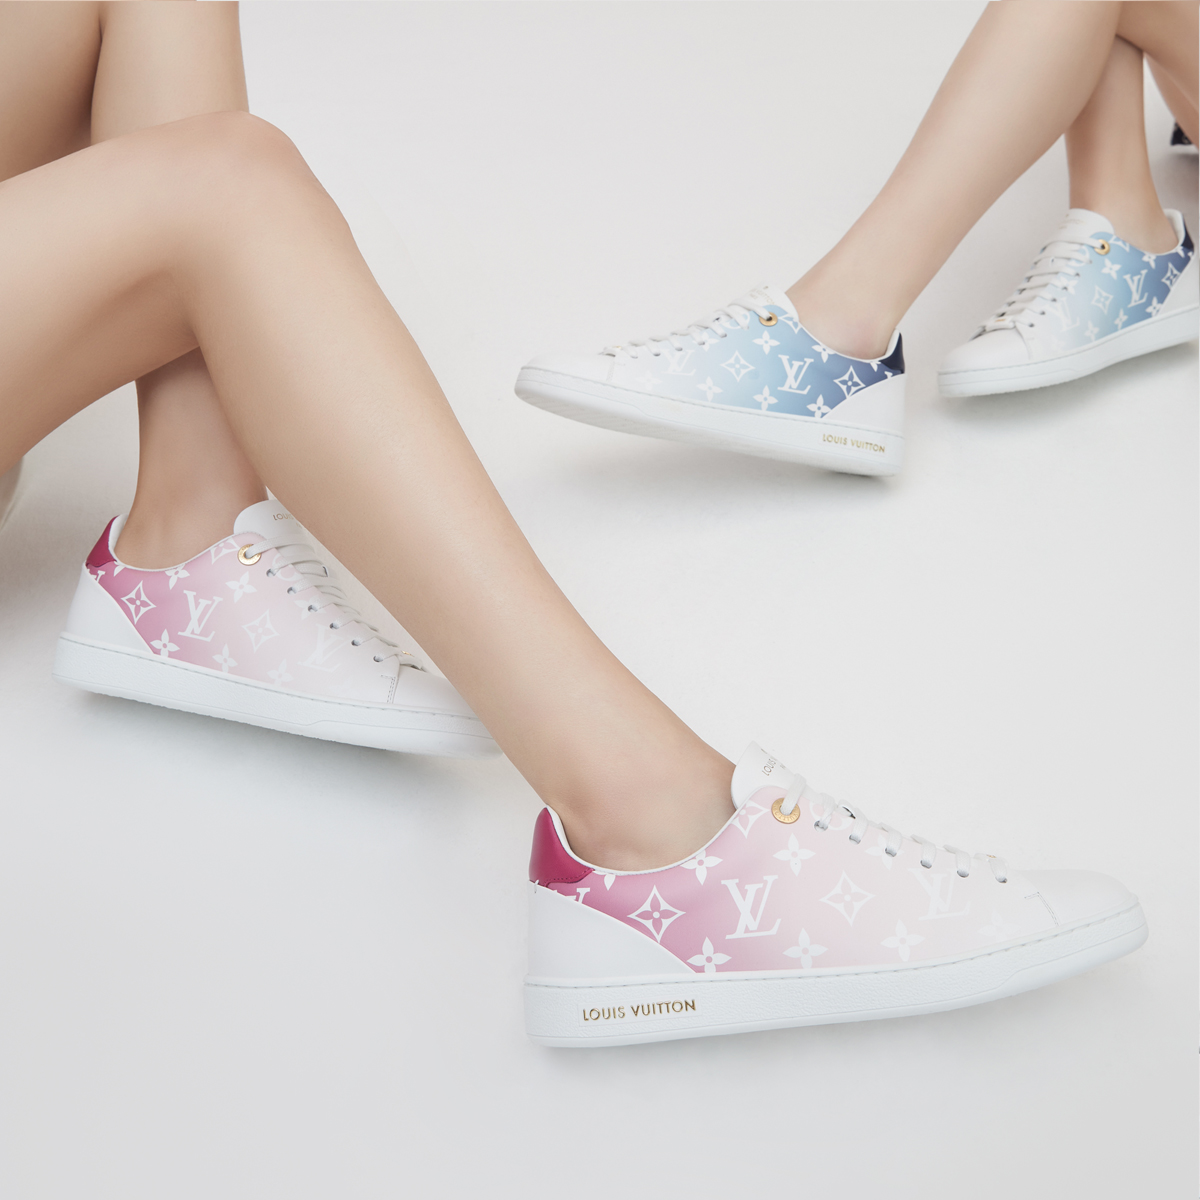 Louis Vuitton sneakers donna 2020: un'inedita combinazione di materiali e  colori freschi - Globestyles